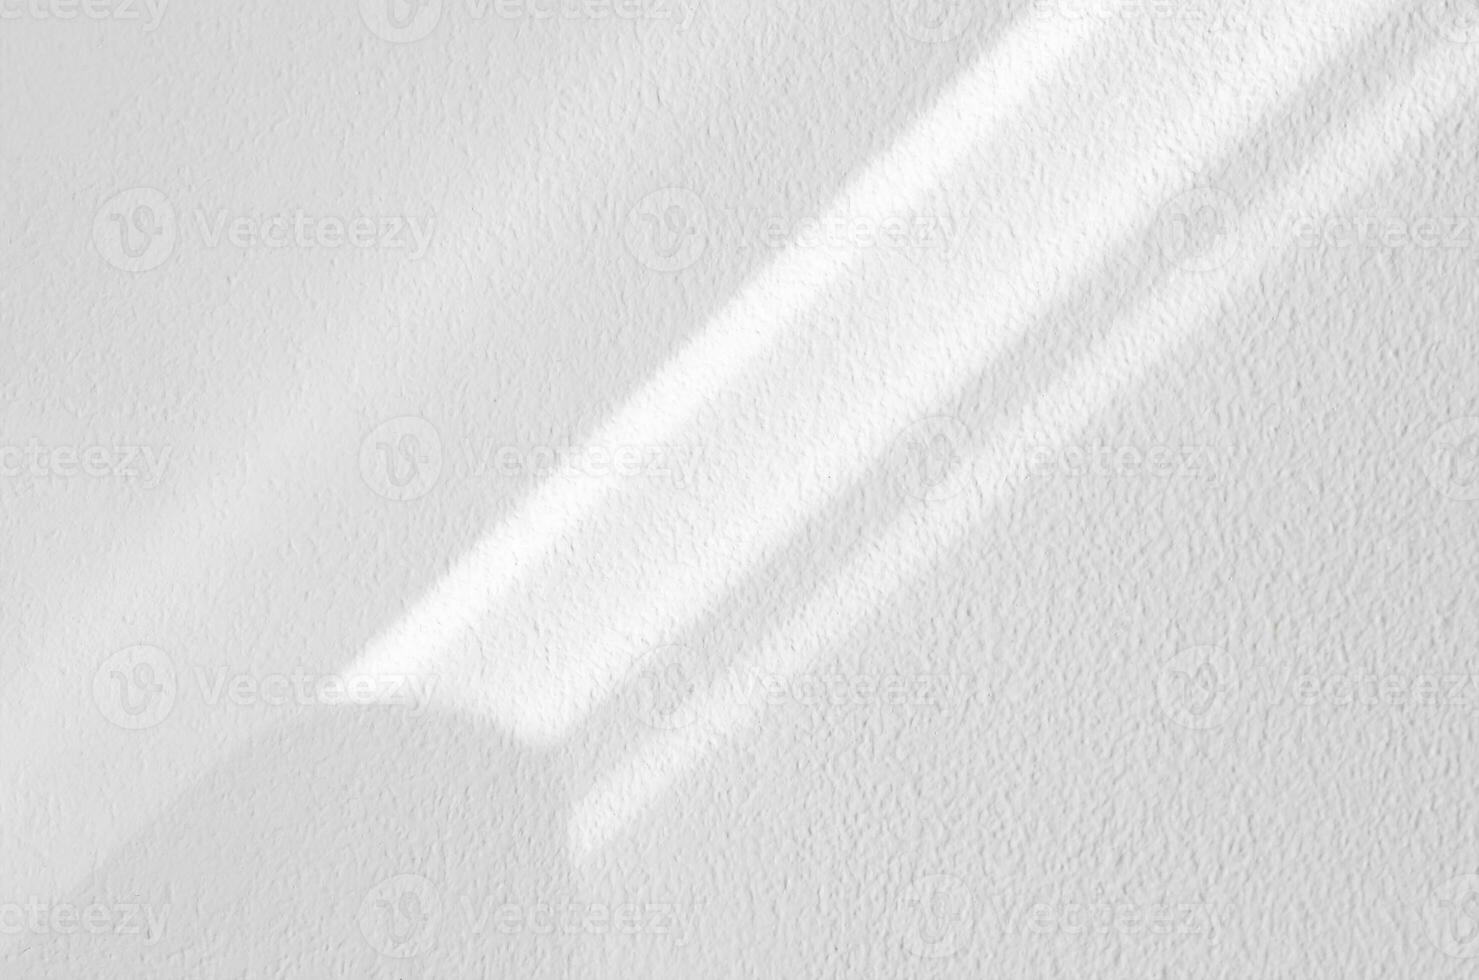 vit vägg betong textur med abstrakt släppa diagonal skugga. solljus täcka över på vit plåster måla på betong golv, ljus effekt för svartvit foto, hån upp, affisch, vägg konstdesign presentation foto